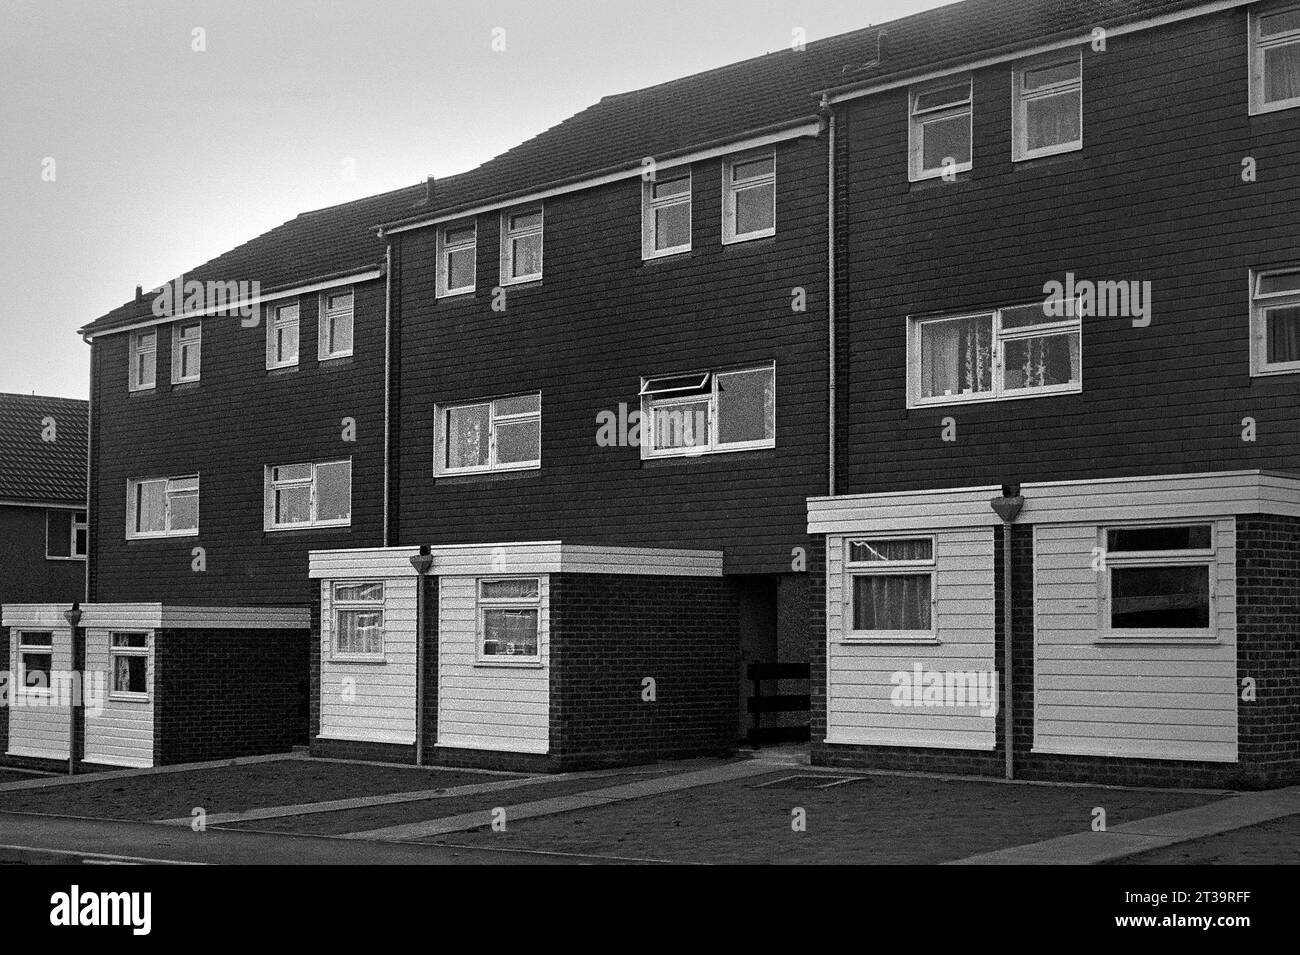 Une rue de nouvelles maisons construites lors de la démolition de St ann's entre 1969-1972, Nottingham, Nottinghamshire, Angleterre, Royaume-Uni, Europe Banque D'Images